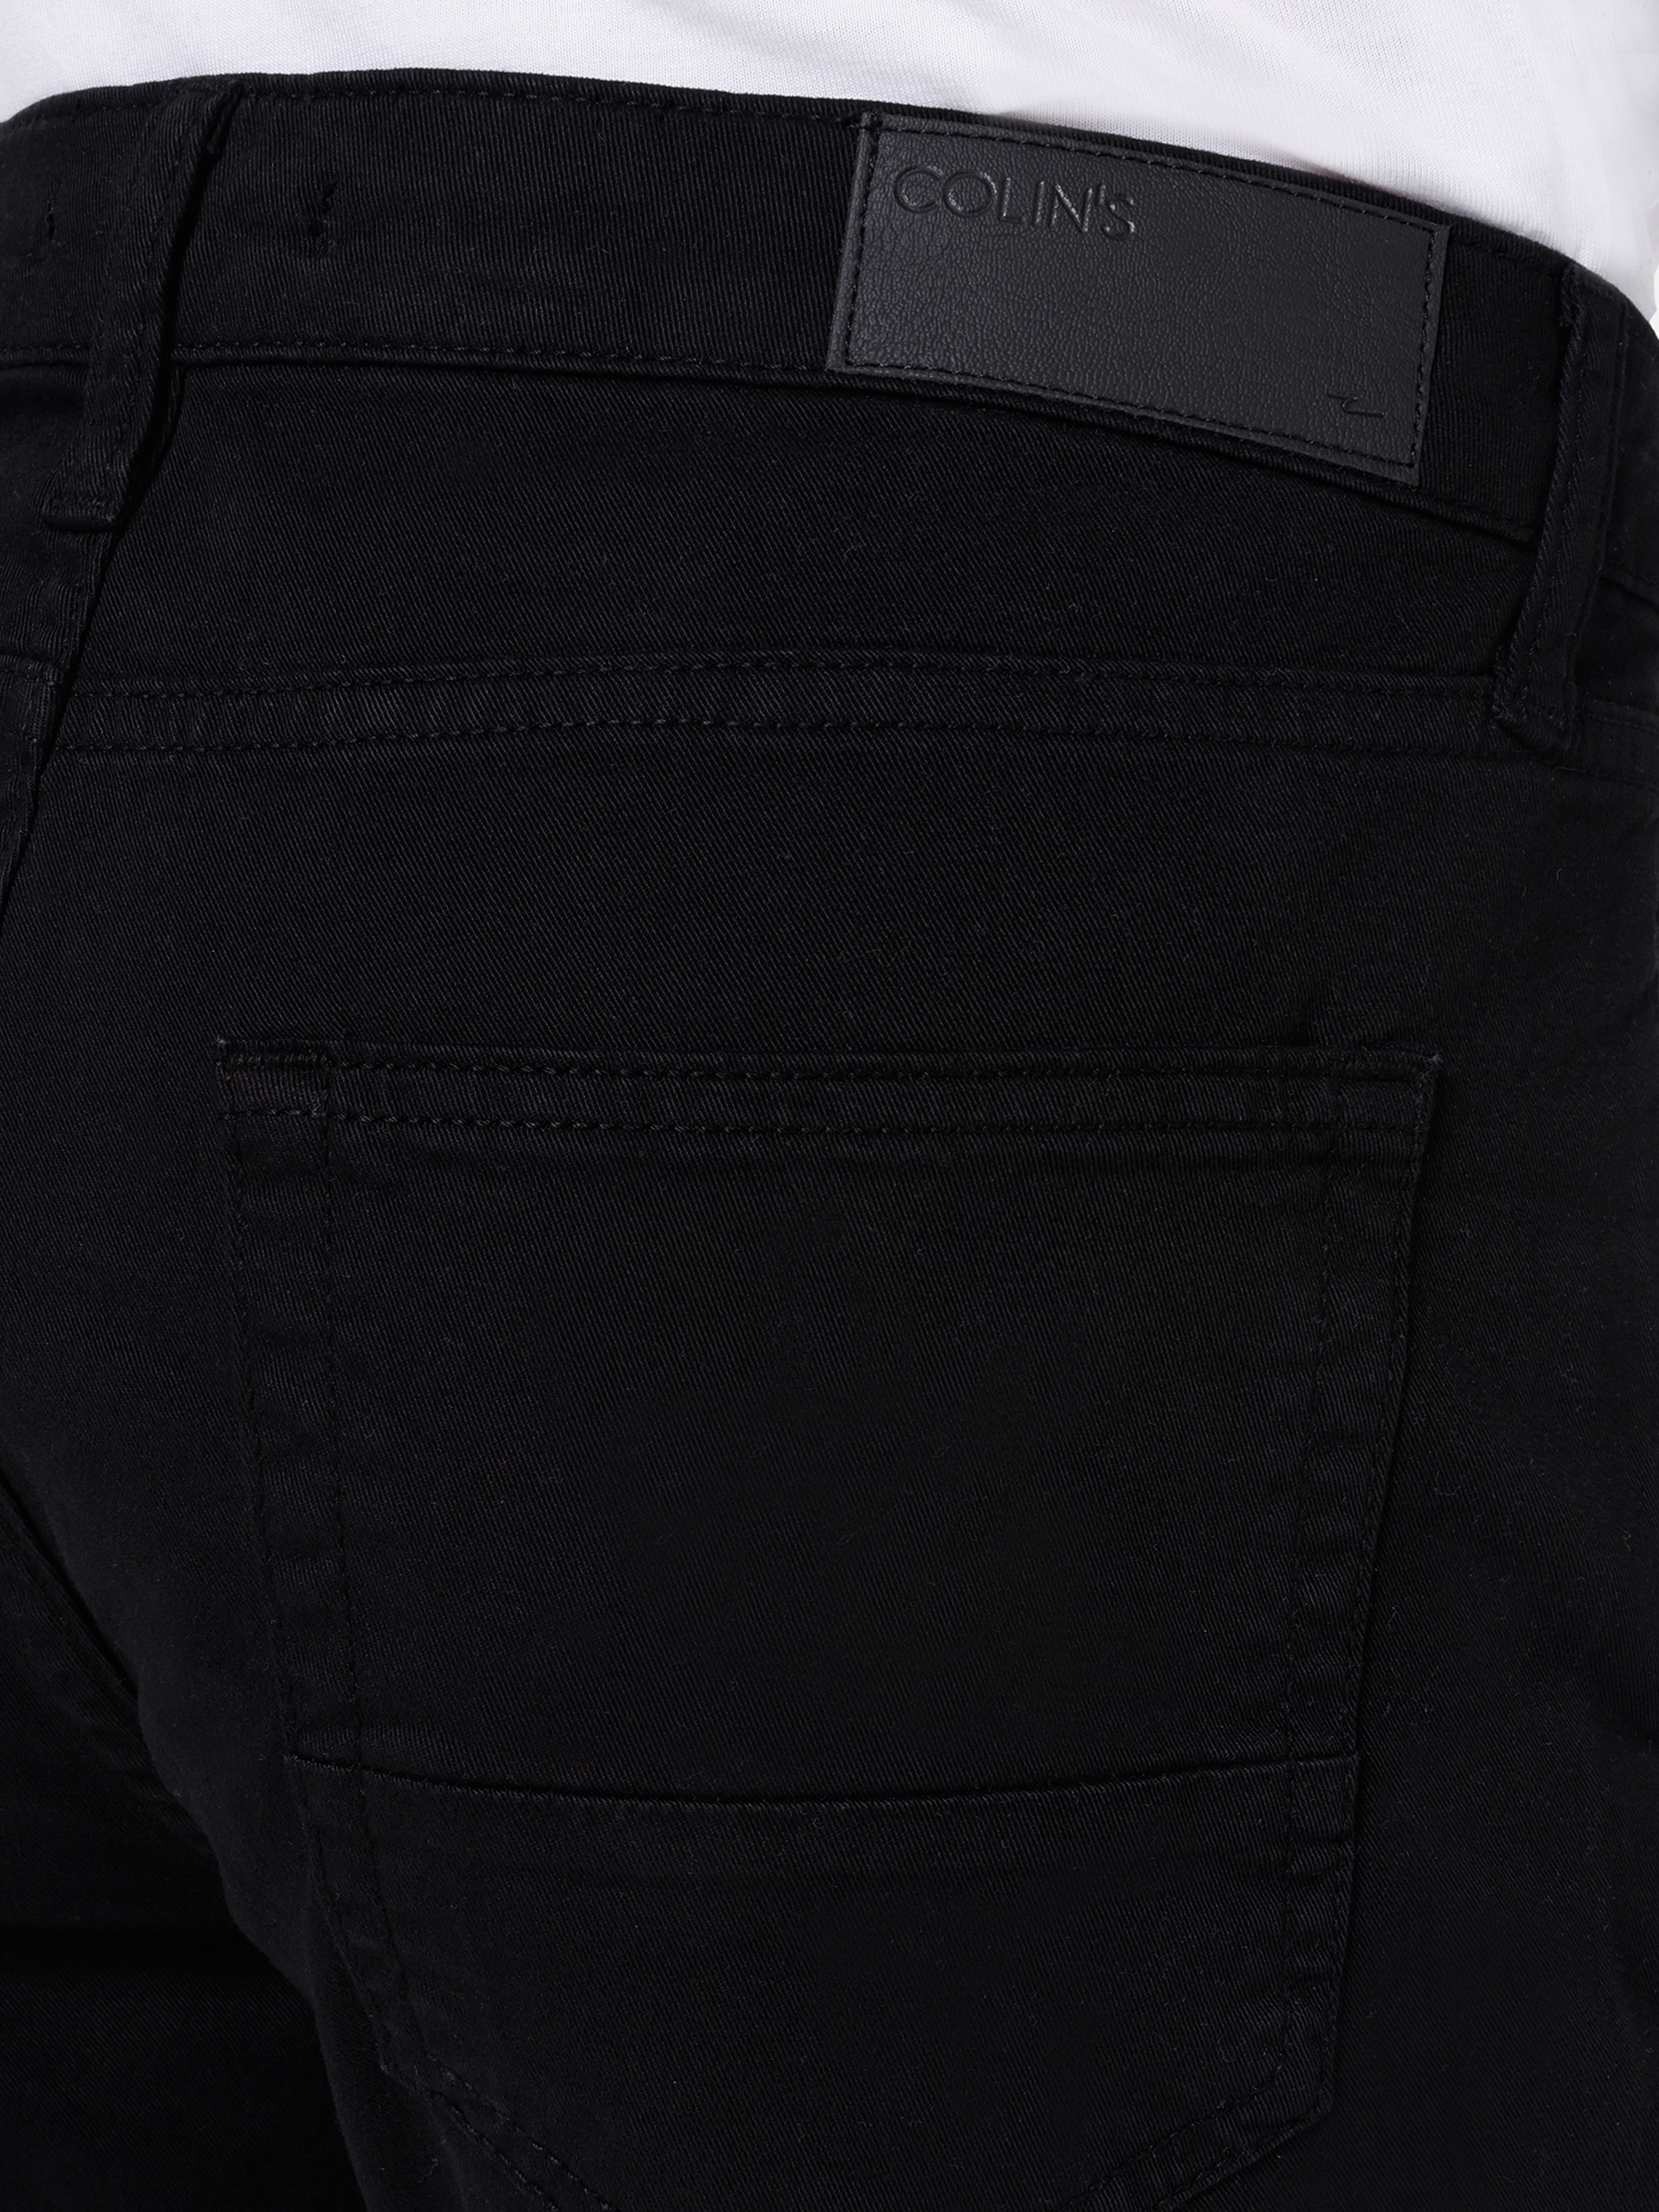 Afficher les détails de Pantalon Homme Noir Taille Basse Coupe Normale Jambe Droite